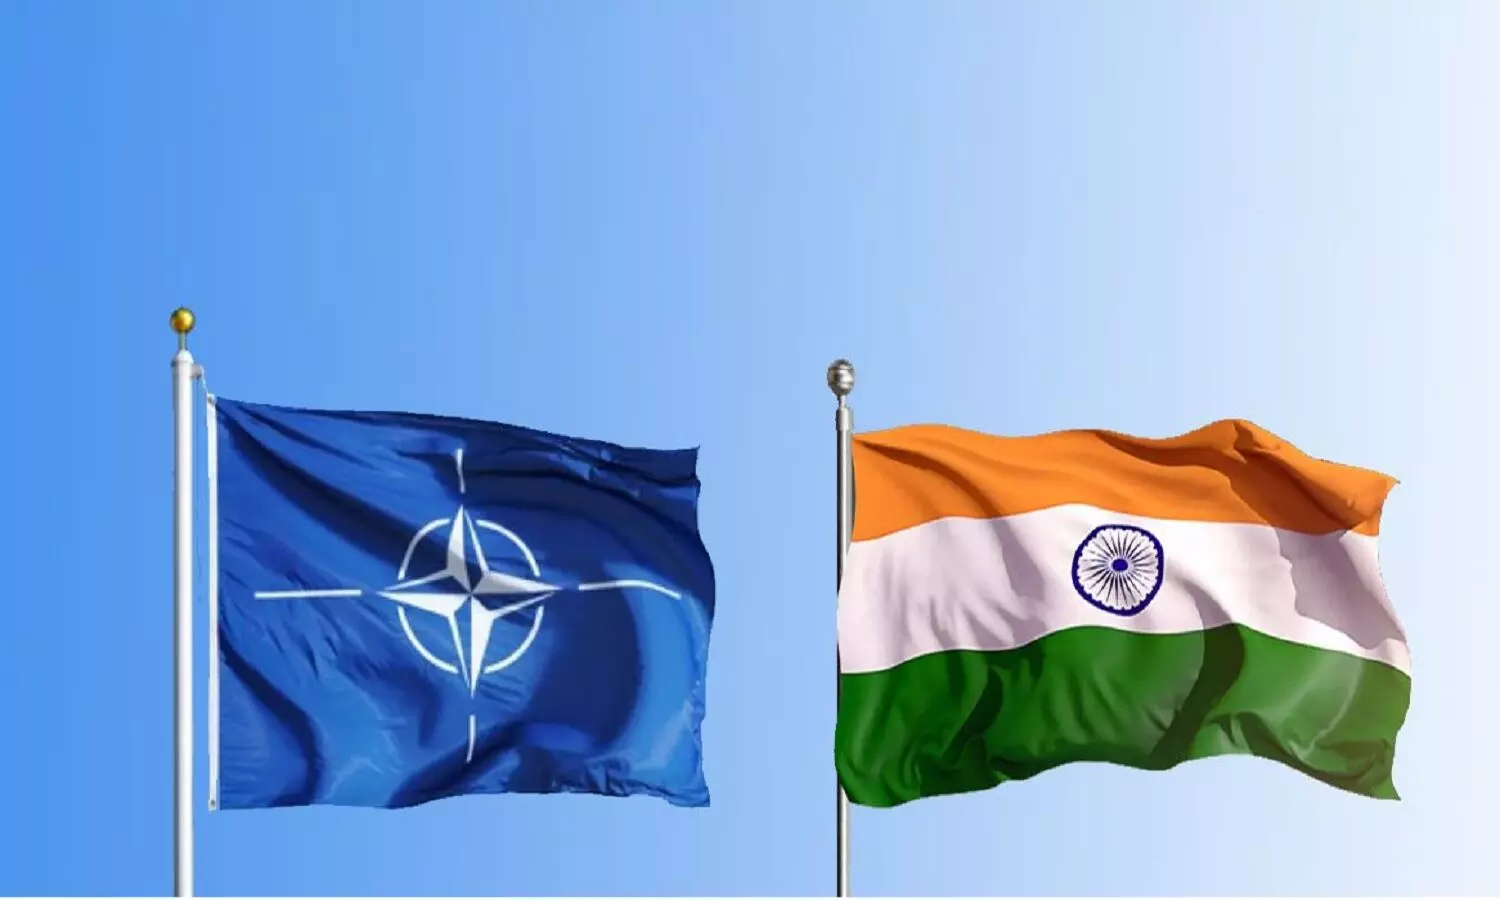 भारत अगर NATO Plus देश बन जाएगा तो क्या होगा? अमेरिका इंडिया को नाटो प्लस दर्जा देने की शिफारिश कर रहा